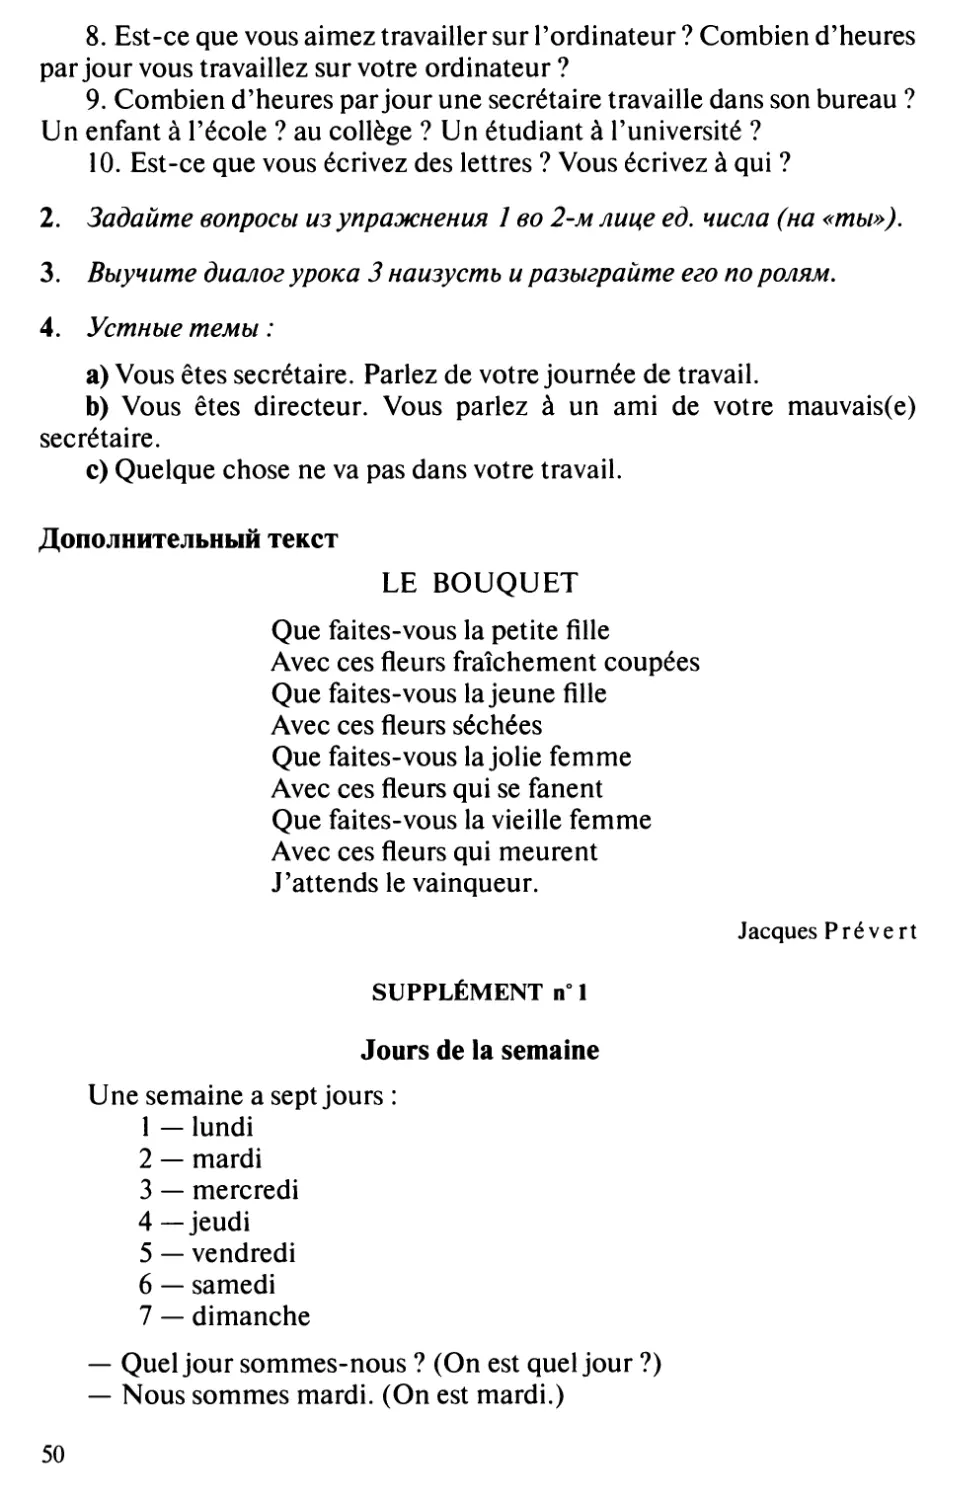 Дополнительные тексты: Jacques Pгéveгt, Le bouquet
Supplément n° 1 : Quelle heure est-il ?